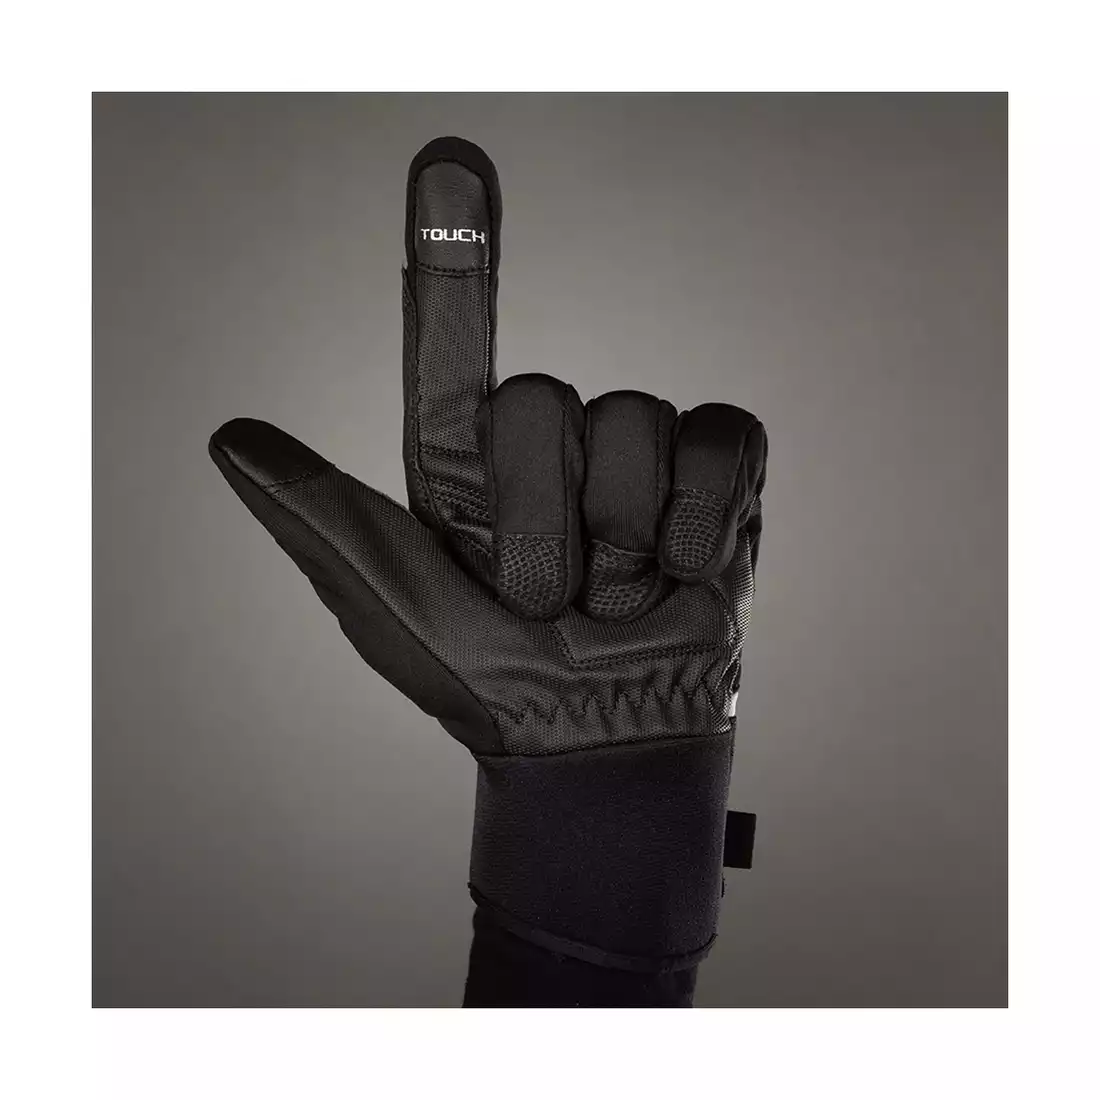 CHIBA PHANTOM mănuși de ciclism de iarnă black 3150520